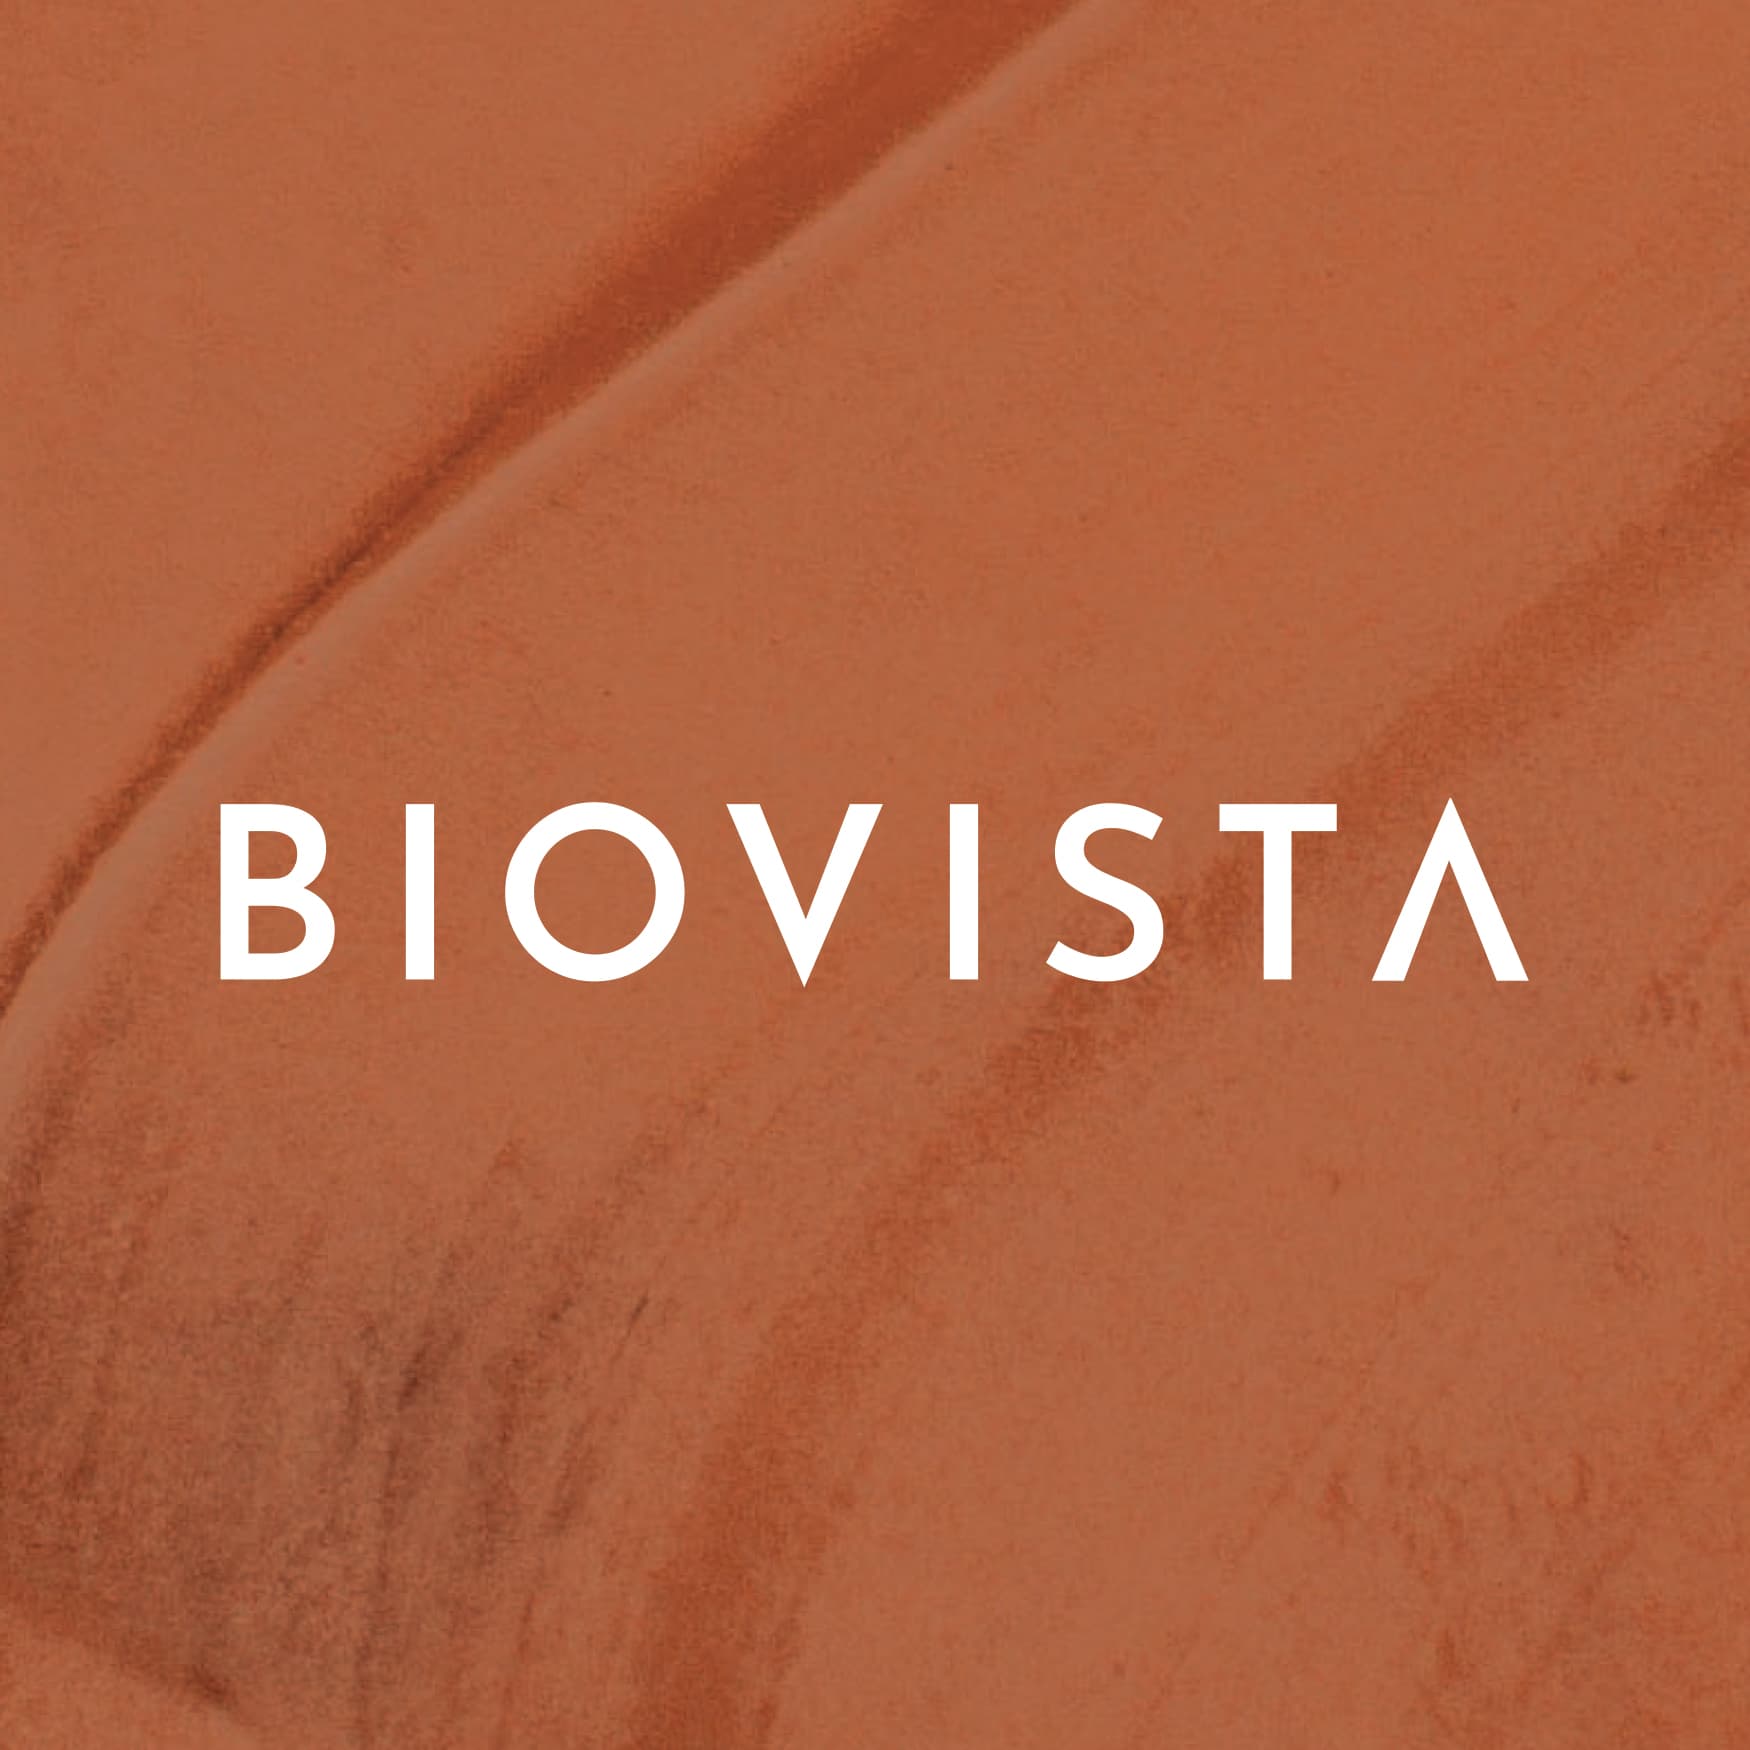 Biovista logo against a burnt orange textured background, designed by RSM Design. 